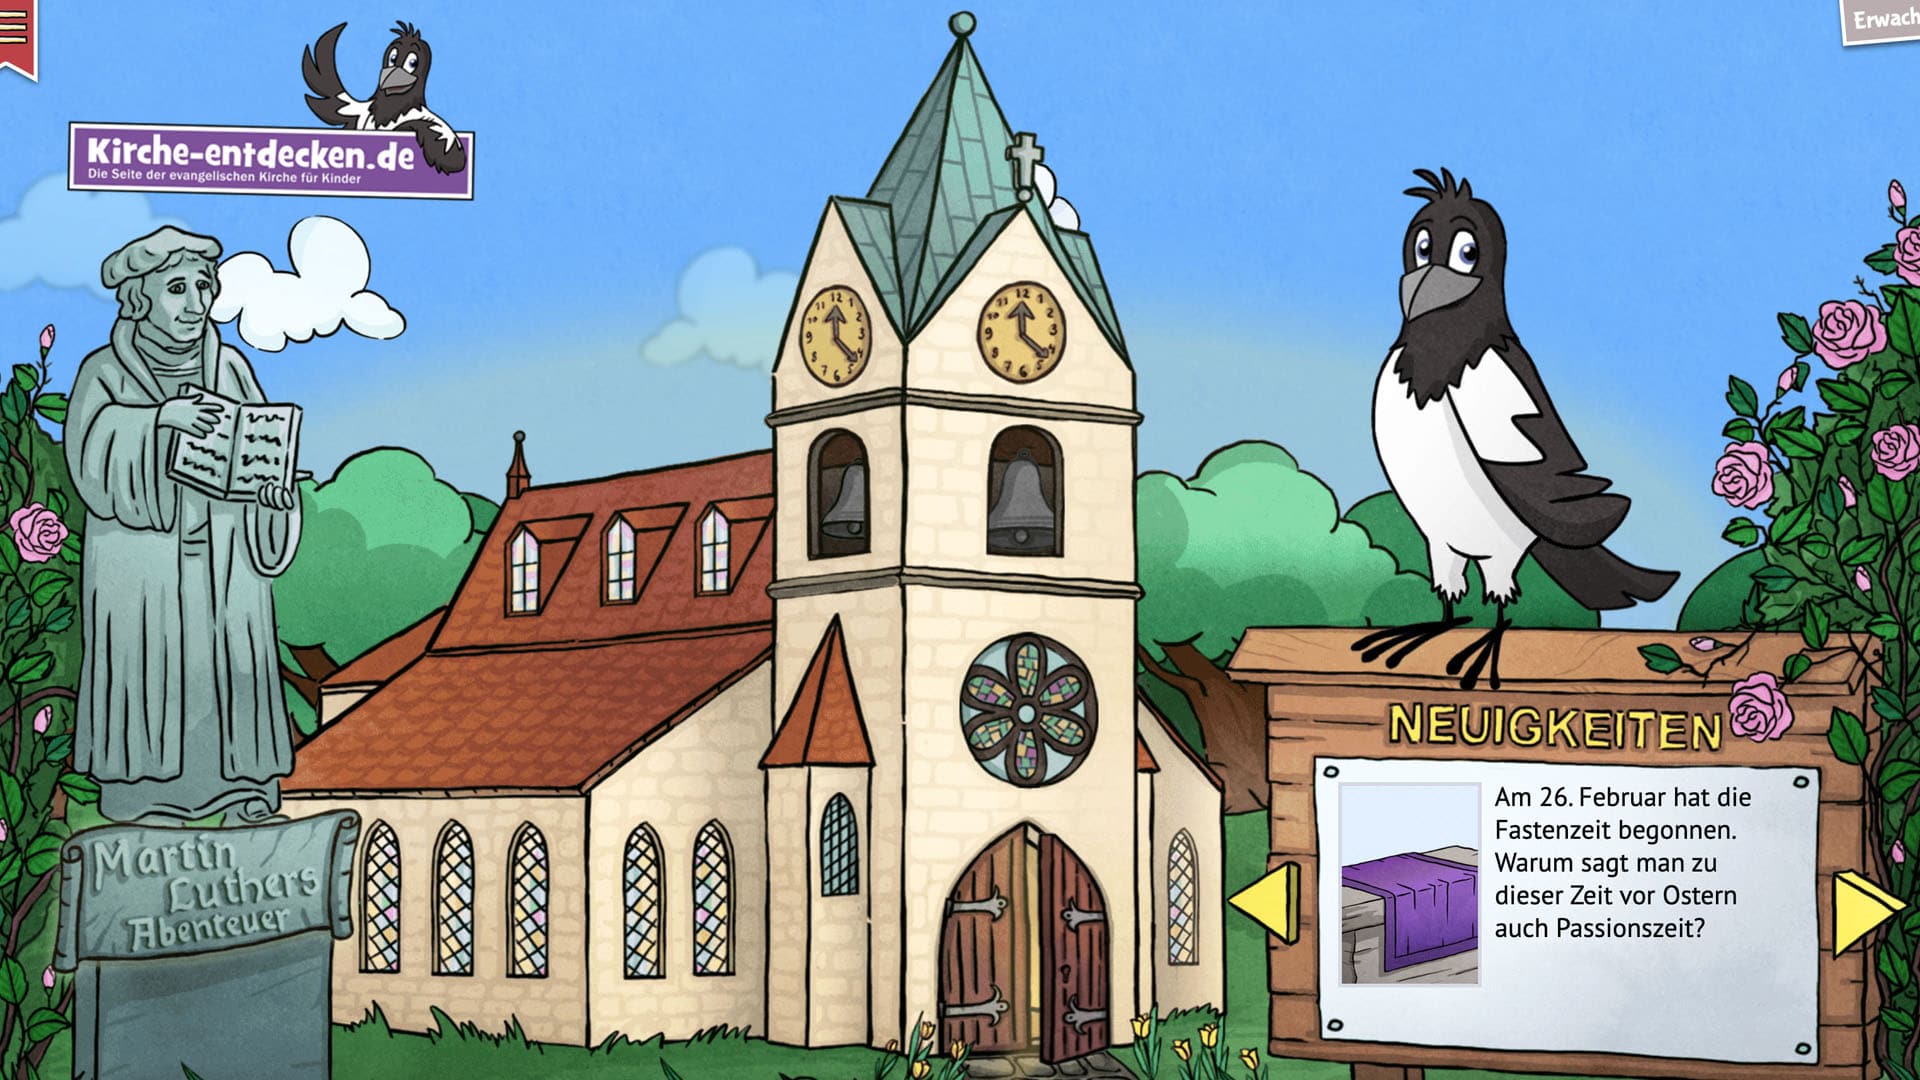 Die Webseite kirche-entdecken.de vermittelt Kindern Wissen rund um kirchliche Themen